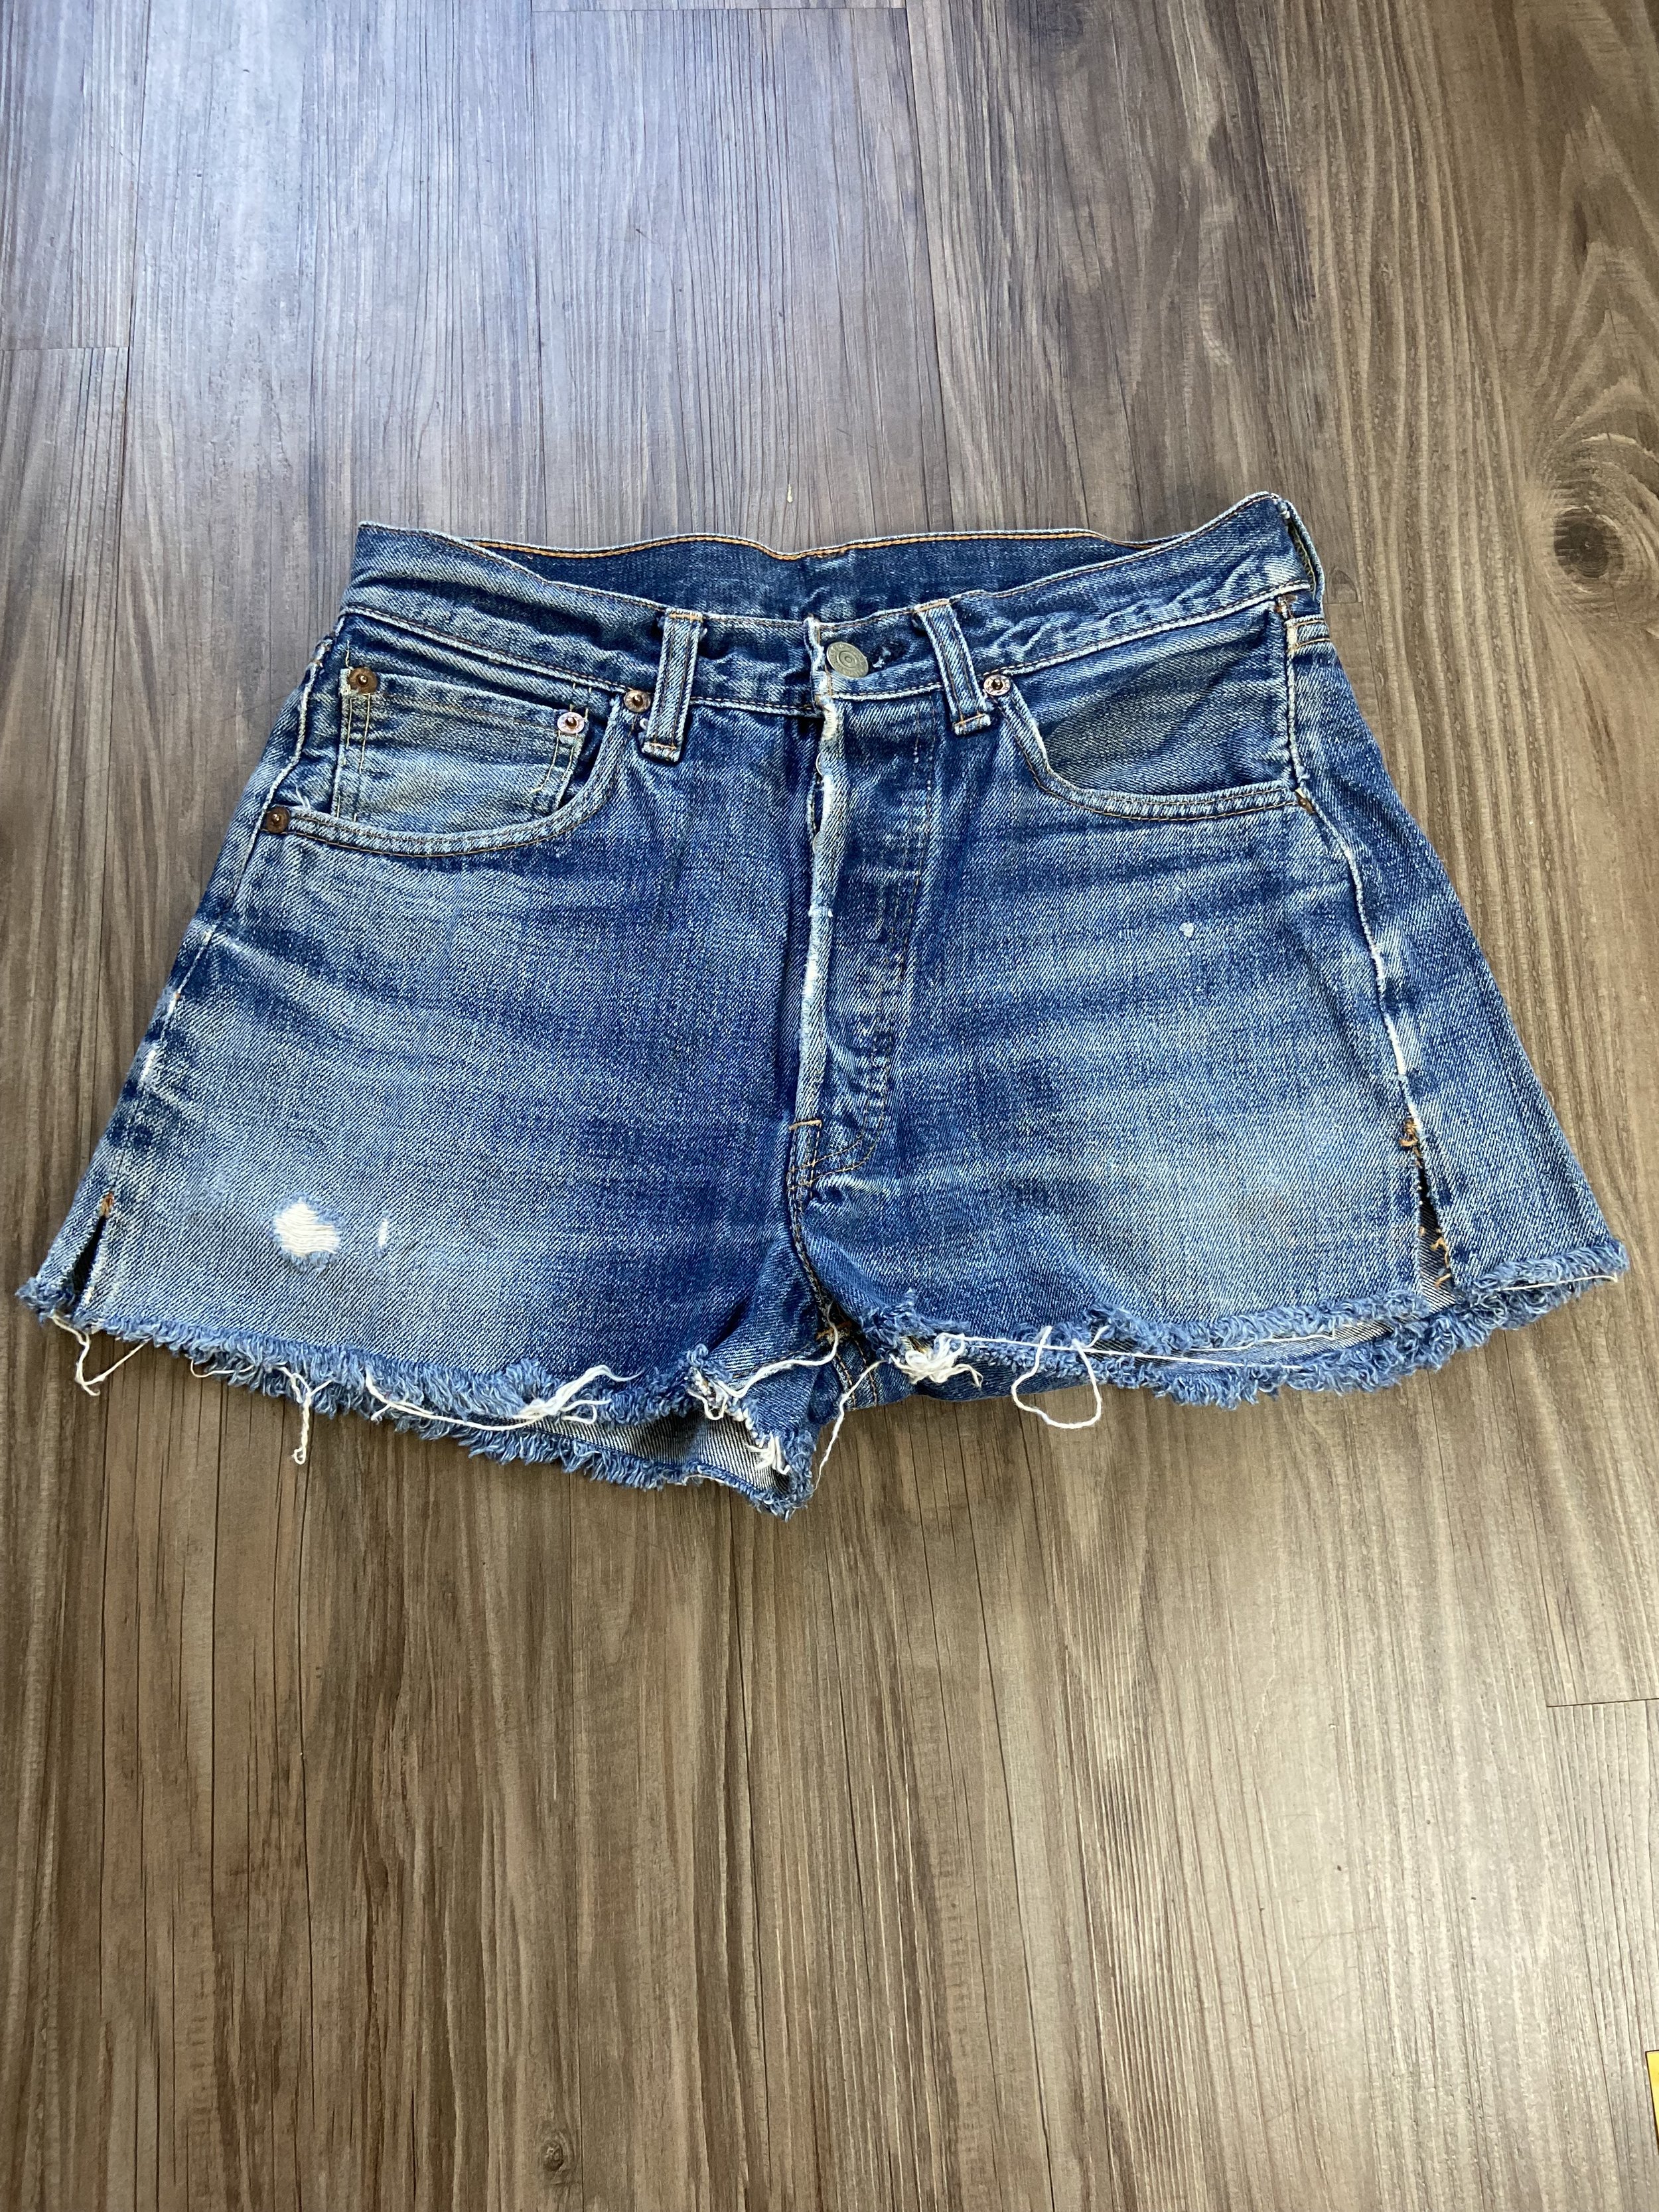 Kluisje Gasvormig opstelling Vintage Levi's 501 BIG E Redlines Cheeky Cut Off Denim Blue Jean Booty  Shorts — DEAD PEOPLE'S SHIT